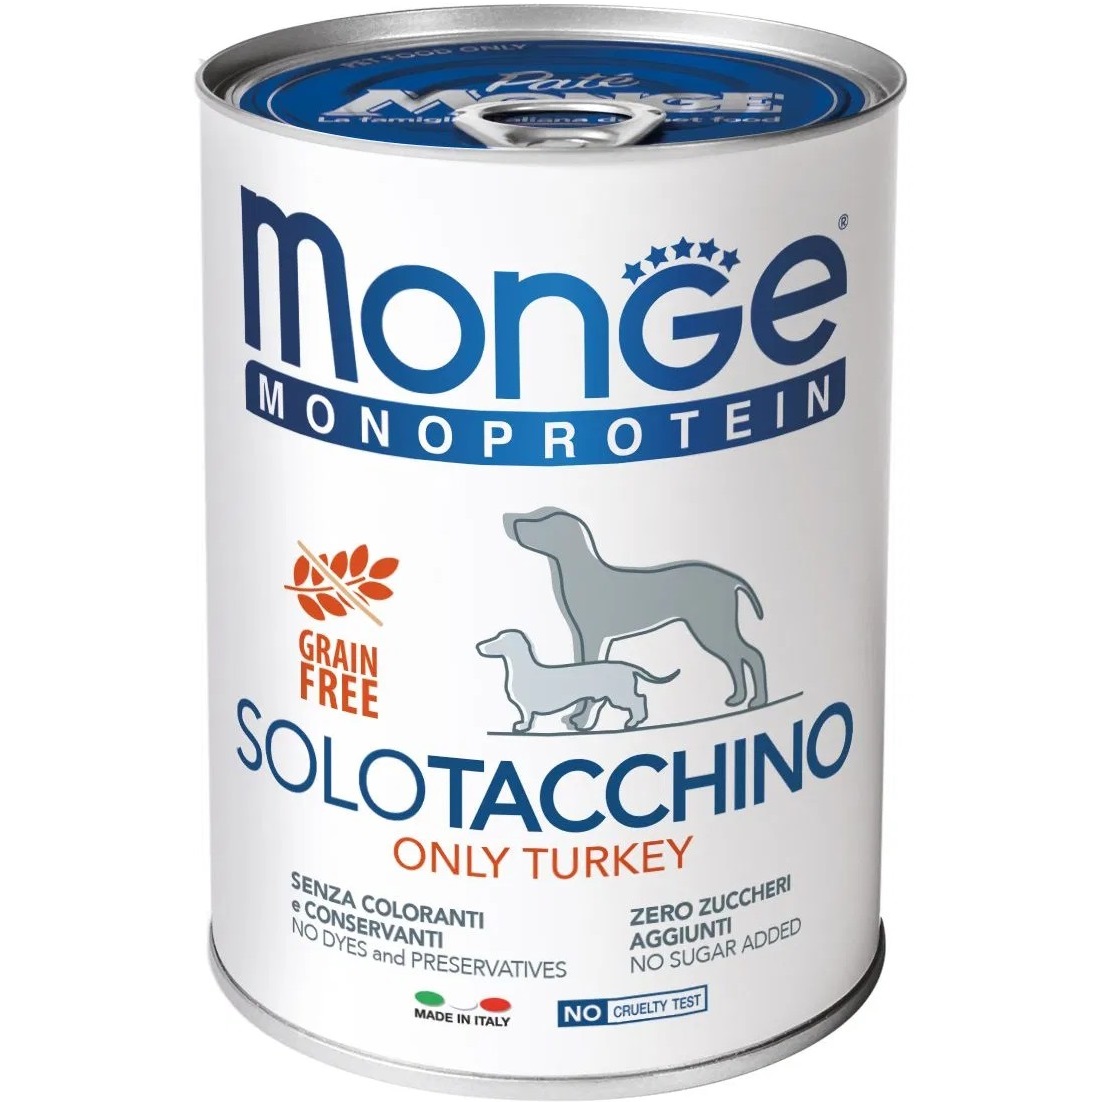 фото Корм для собак monge dog monoproteico solo паштет из индейки 400 г